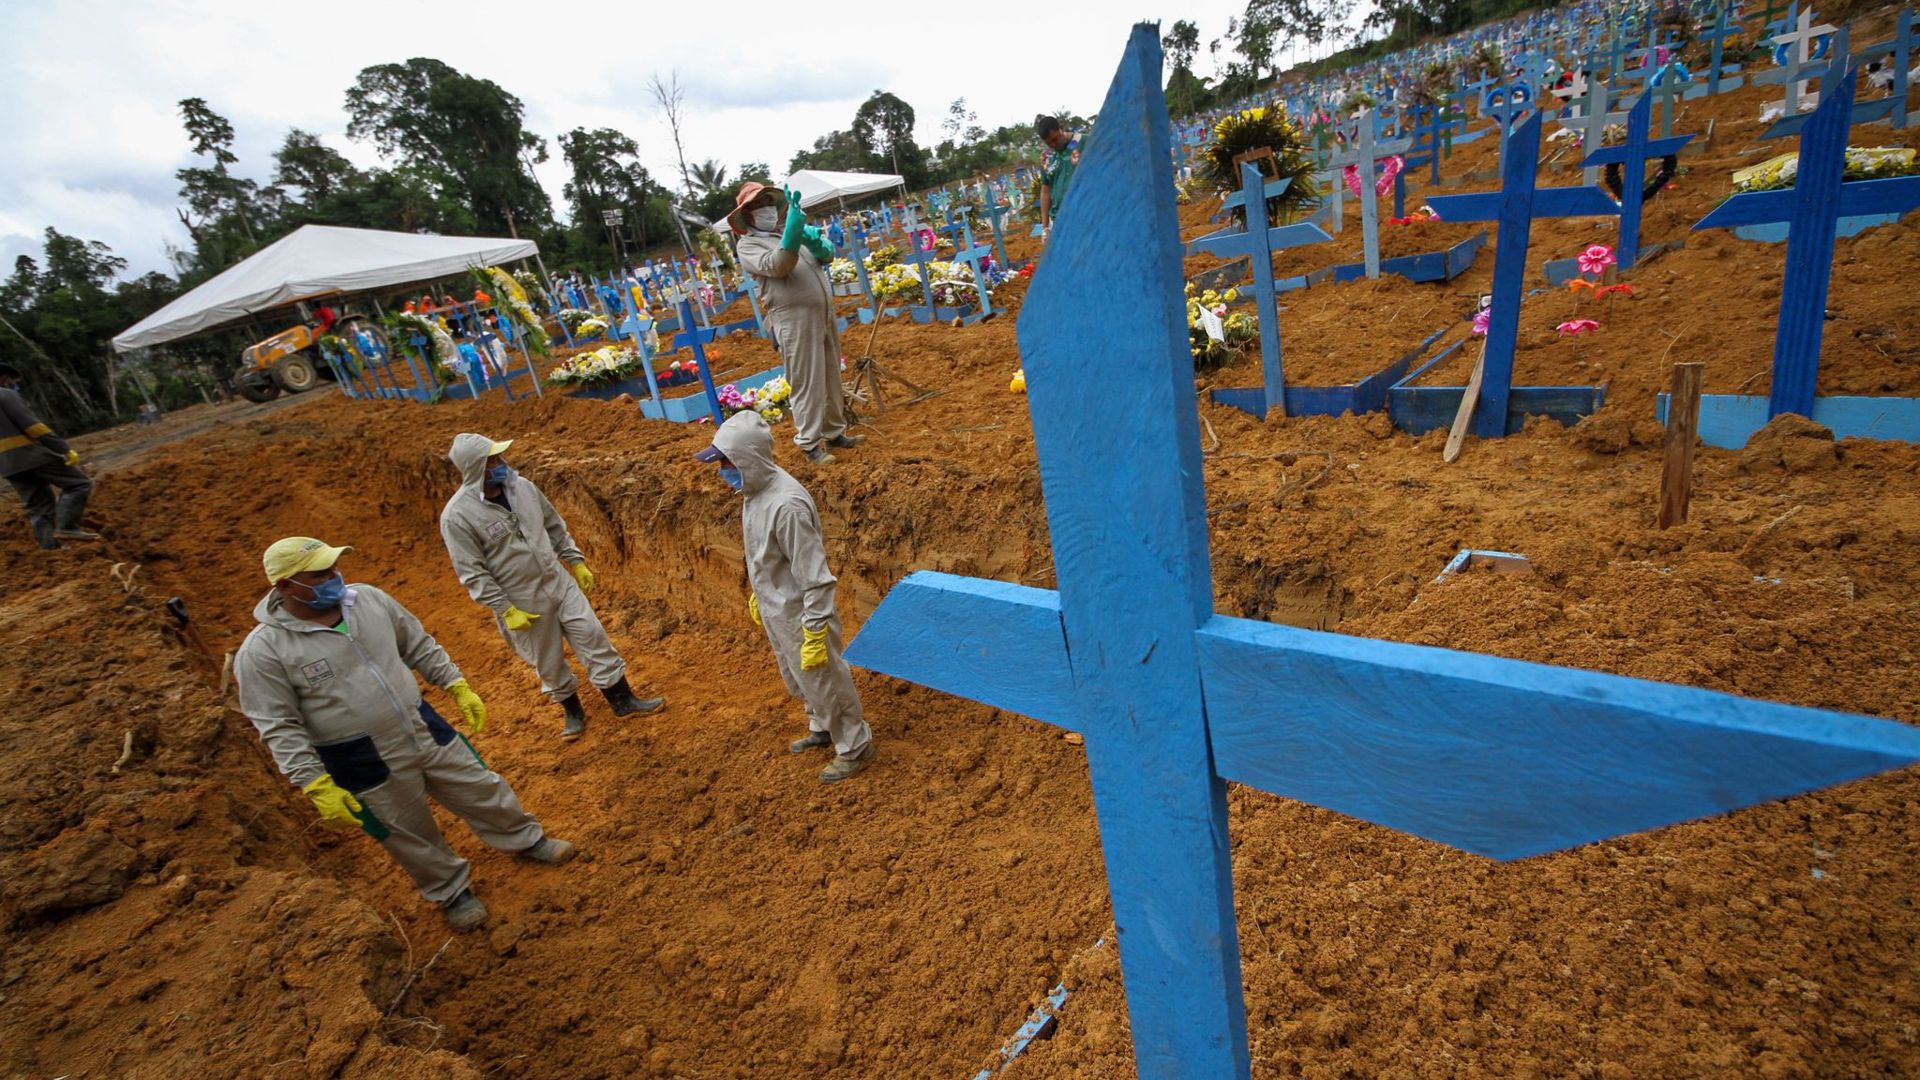 Massengrab auf einem Friedhof in Manaus in Brasilien. Die Corona-Pandemie kostete weltweit Hunderttausende Menschenleben.